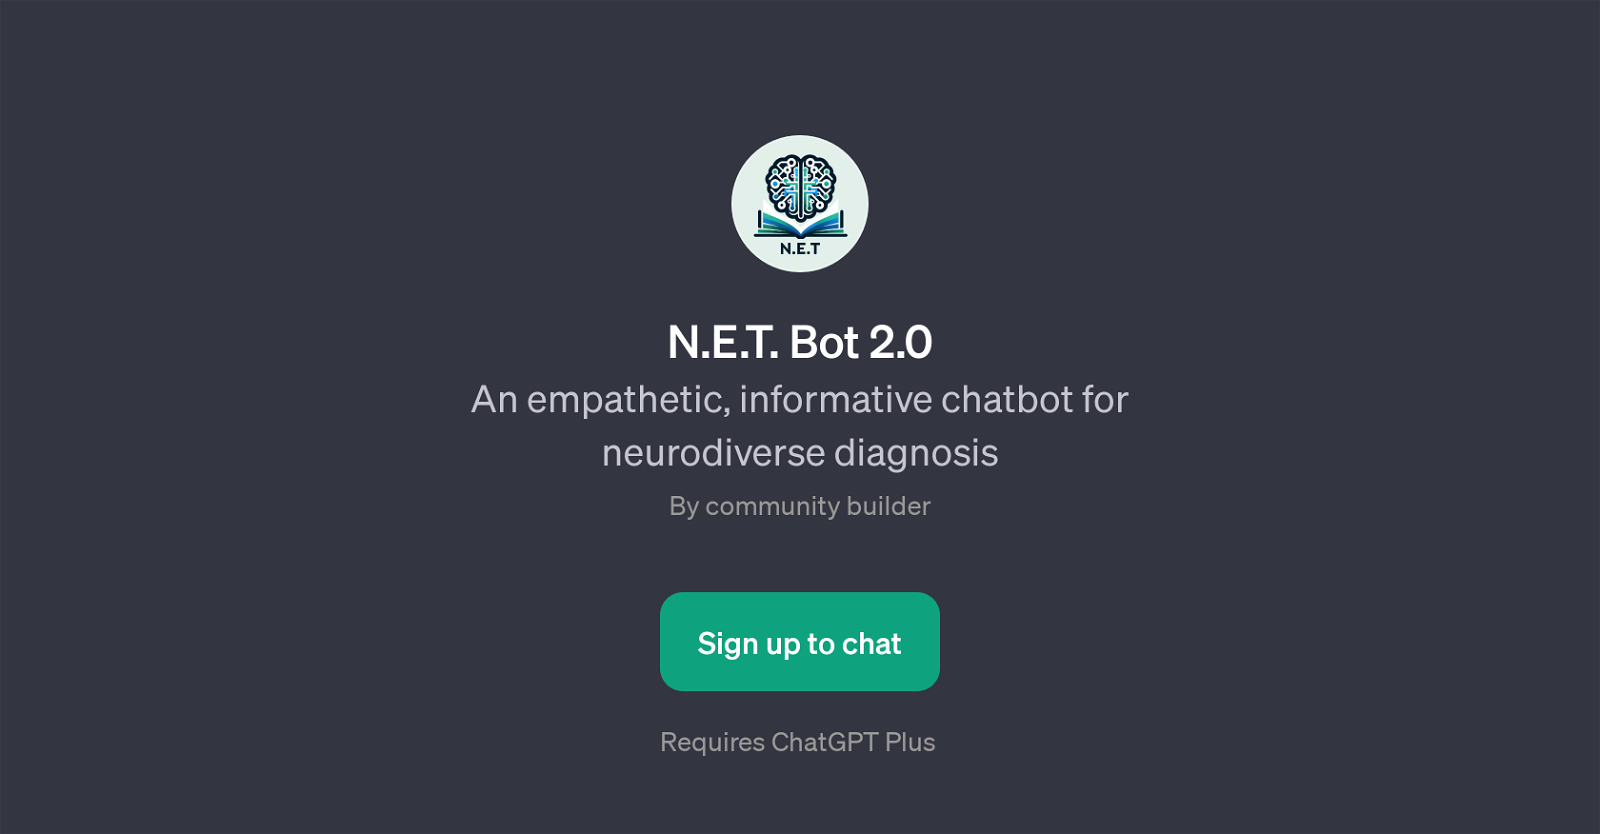 N.E.T. Bot 2.0 website